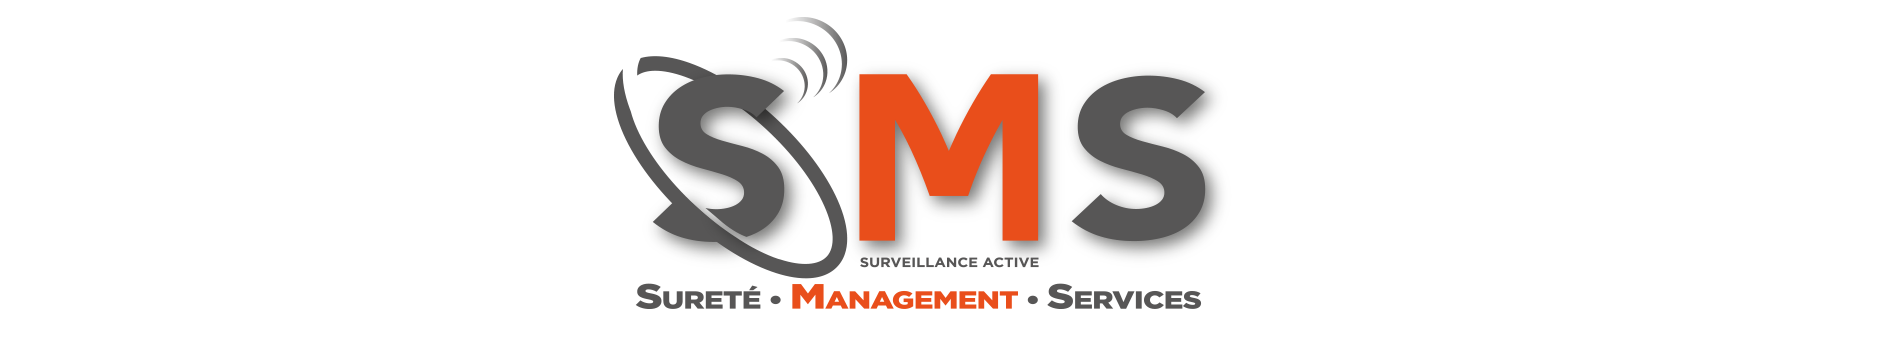 Logo sms-active